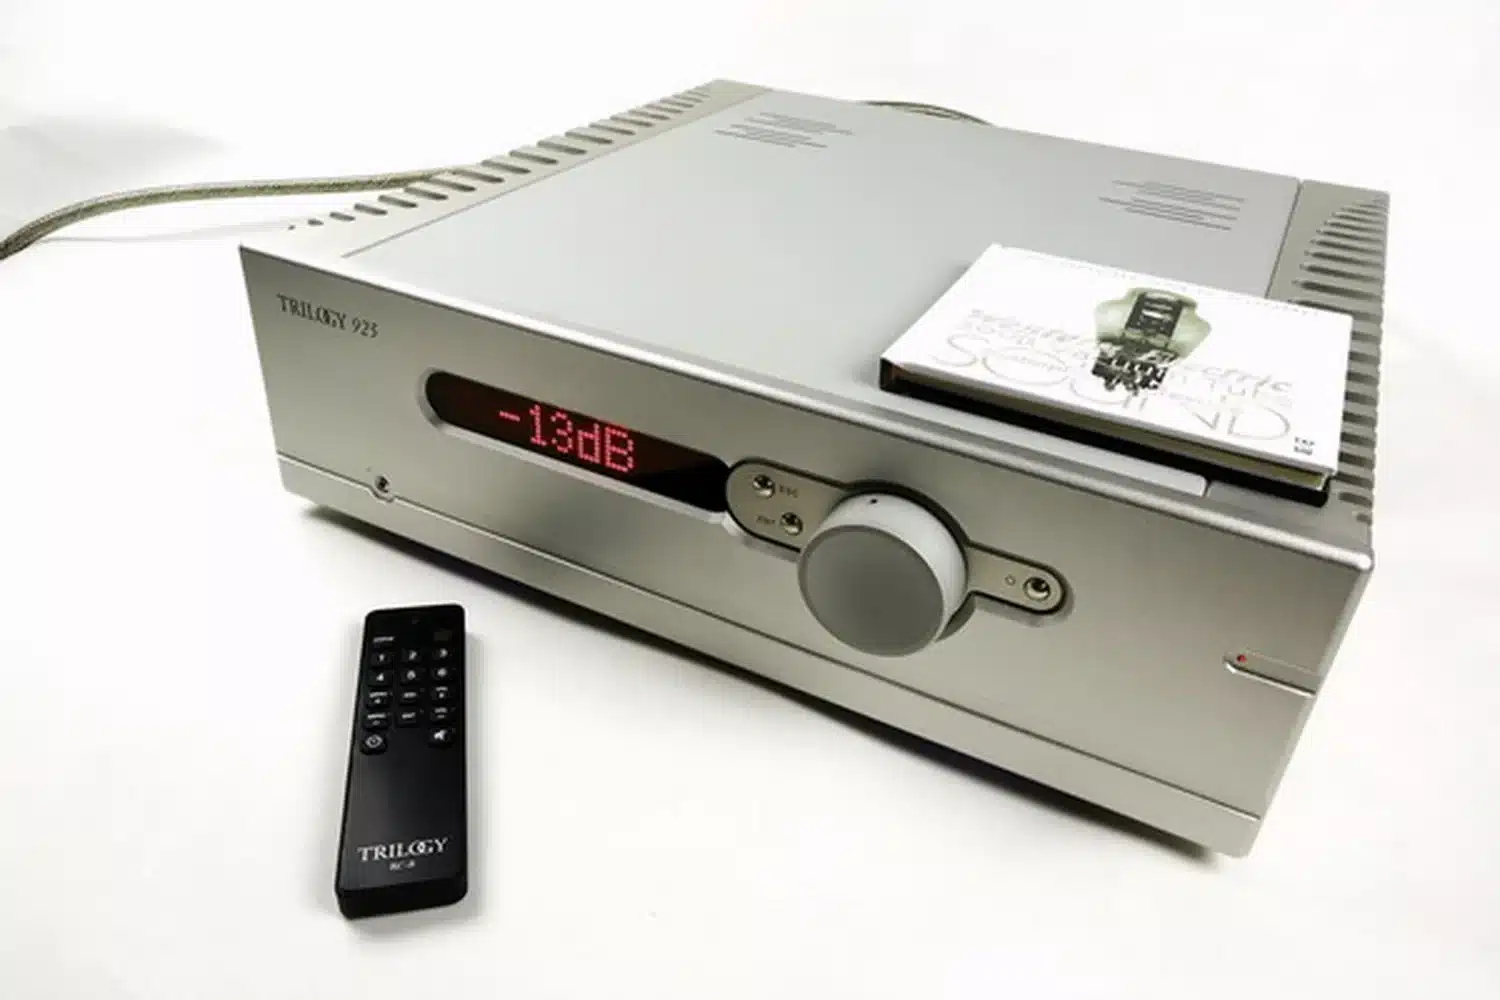 Un amplificateur hybride intégré Trilogy Audio 925 avec son affichage numérique rouge indiquant "-13db", accompagné à côté de sa télécommande noire et d'une pochette de CD sur le dessus (par 1877.audio)